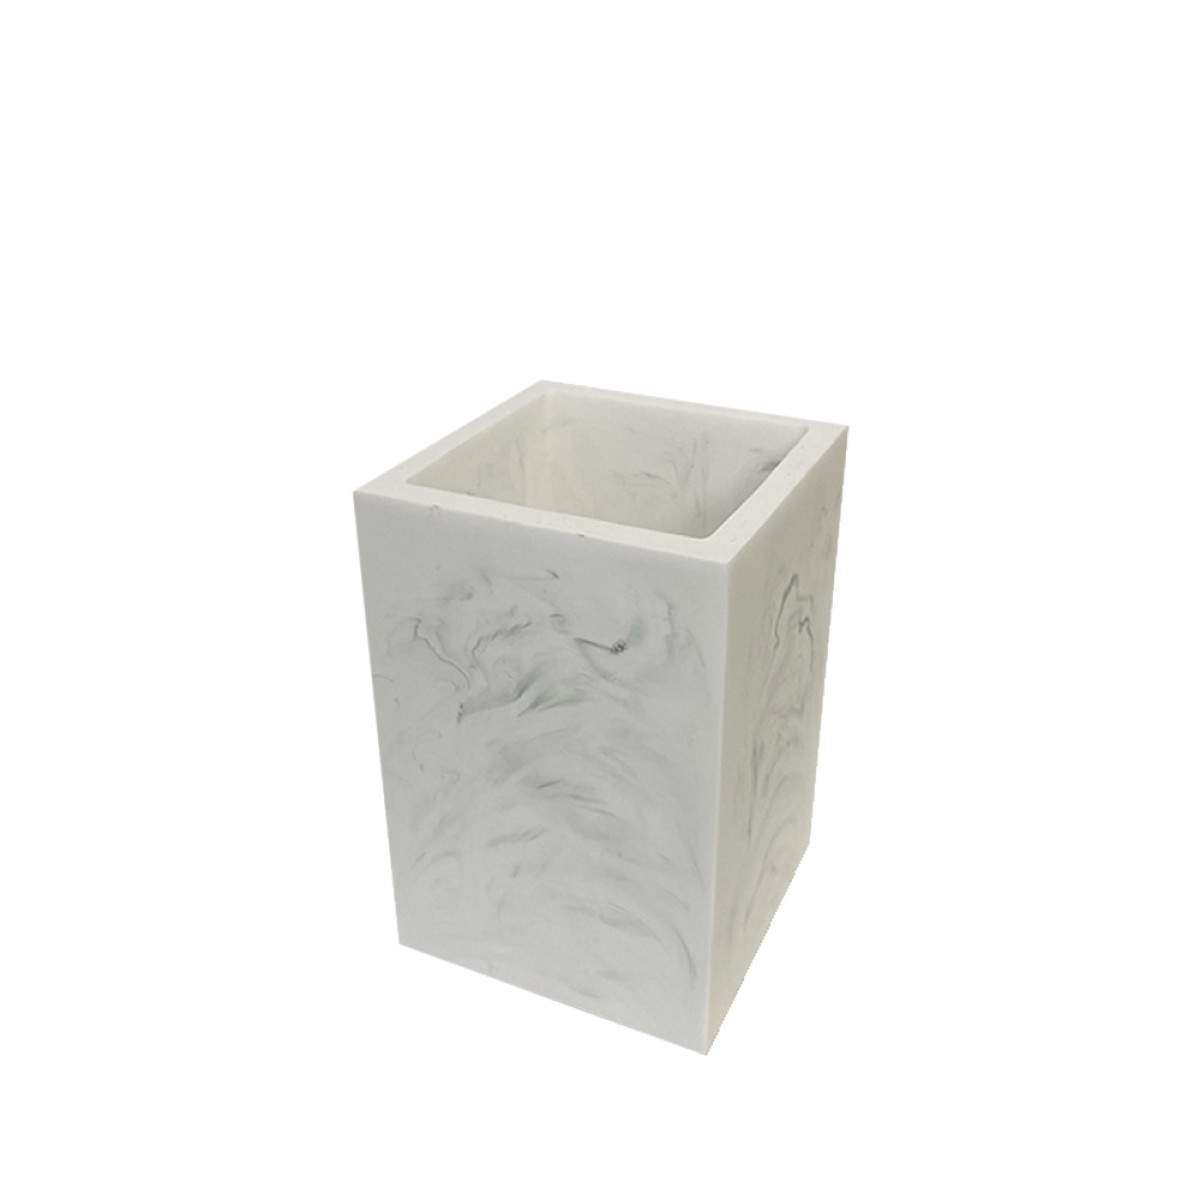 Ποτήρι Οδοντόβουρτσας (6.5x6.5x10) Ρητίνης με εφέ μαρμάρου σε λευκό χρώμα Marva Marble 478173